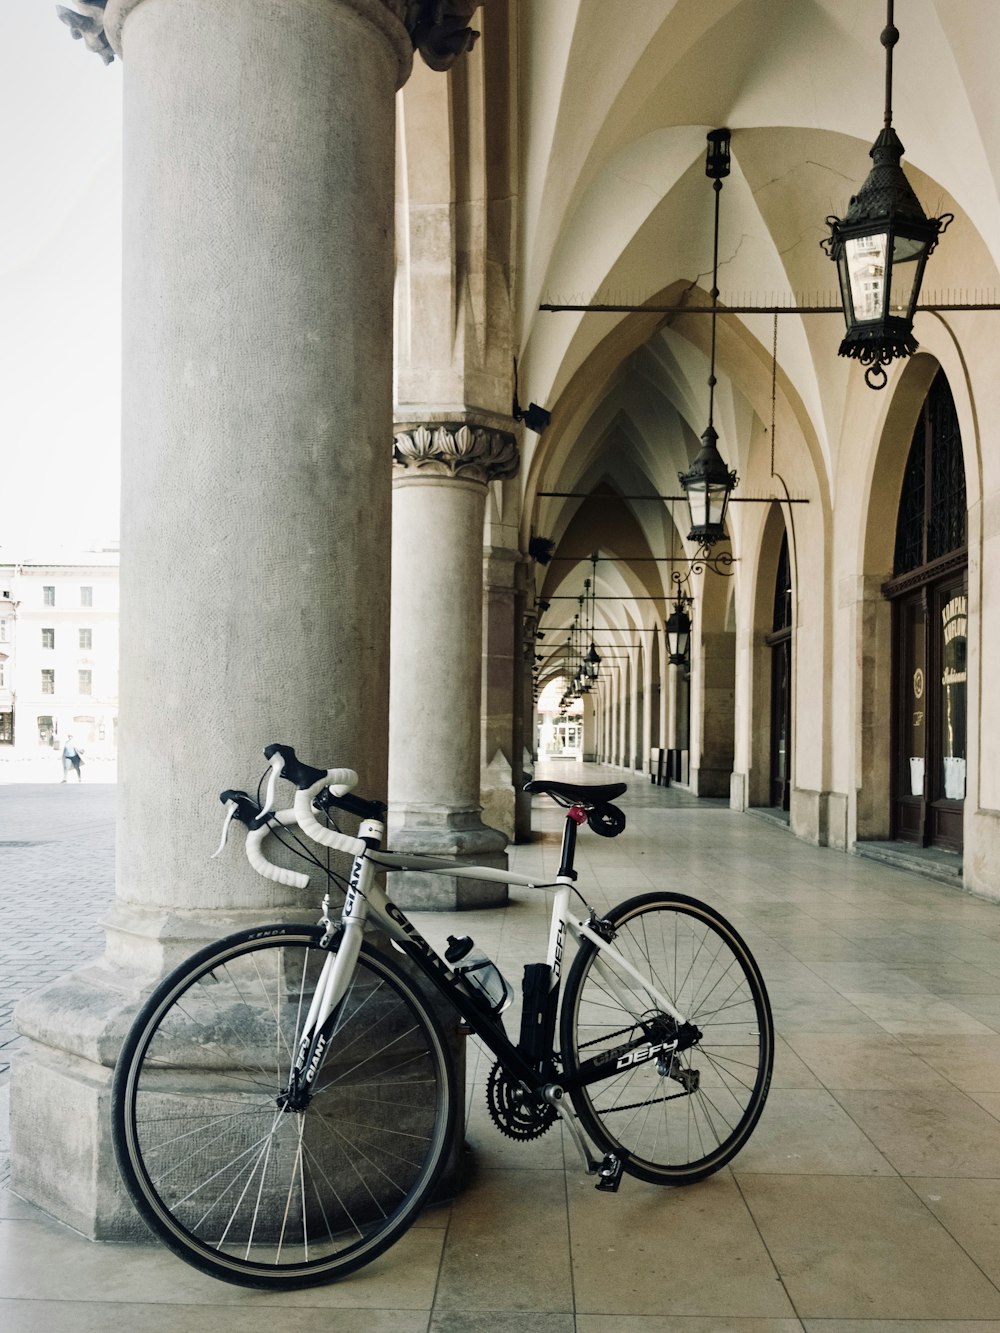 un vélo garé devant un immeuble